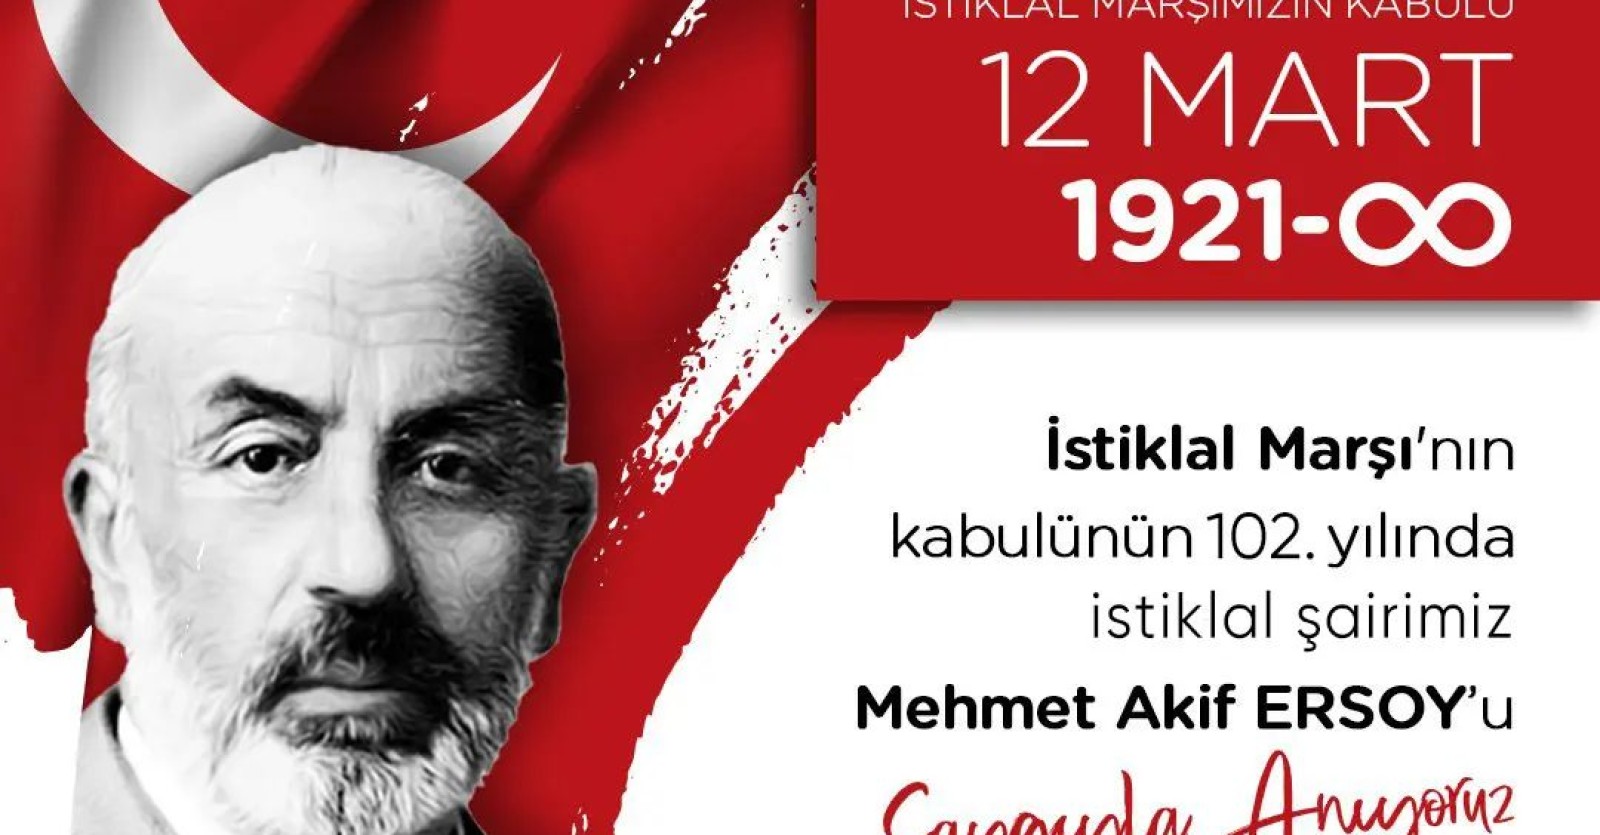 İstiklal Marşı'nın Kabulü ’nün 102. yılında Milli Şairimiz Mehmet Akif Ersoy’u saygı, rahmet ve dua ile anıyoruz.